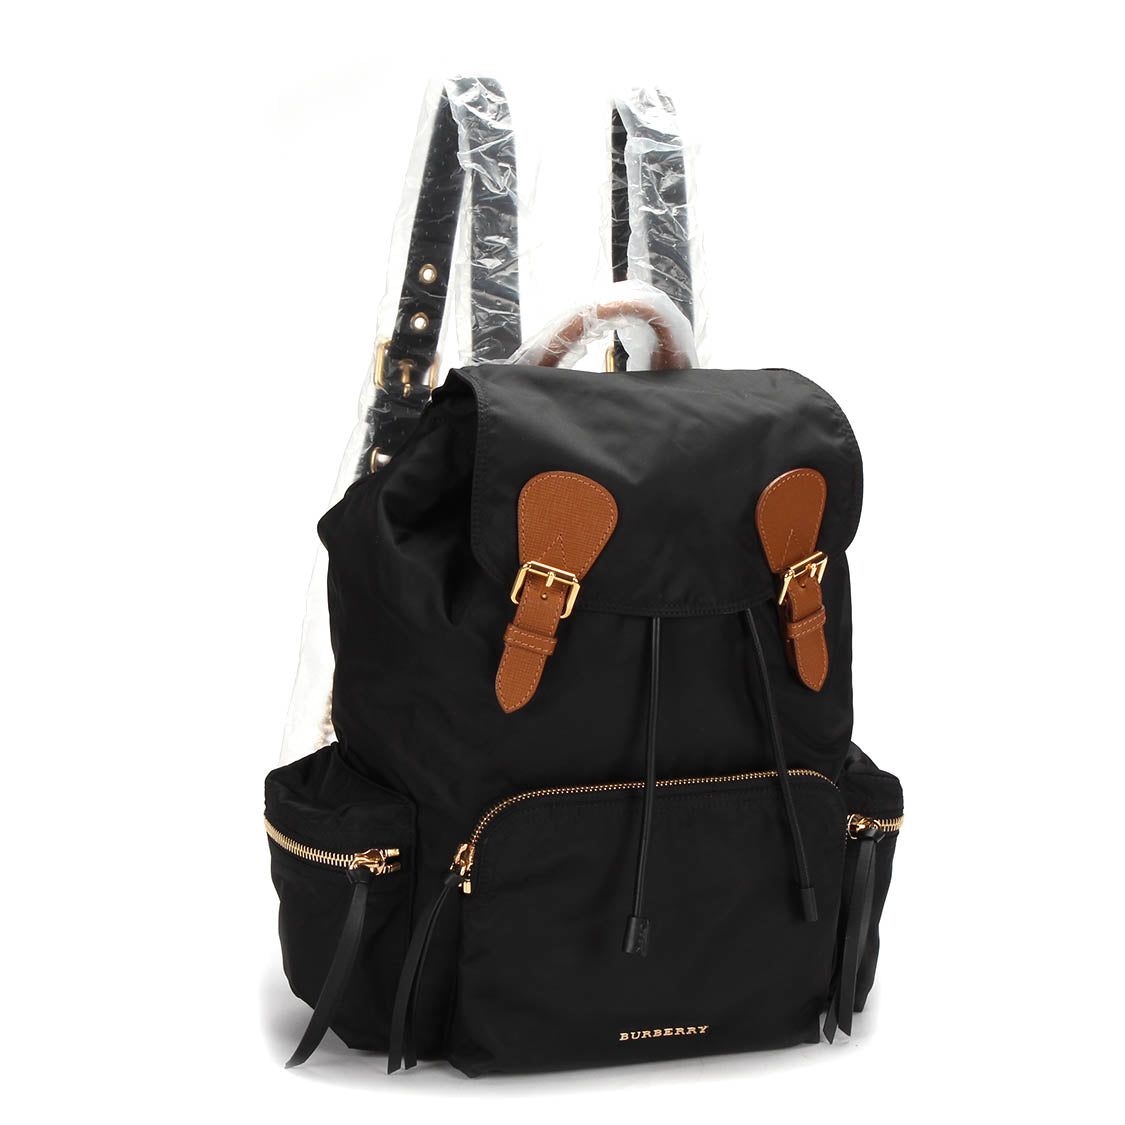 The Rucksack Nylon Backpack